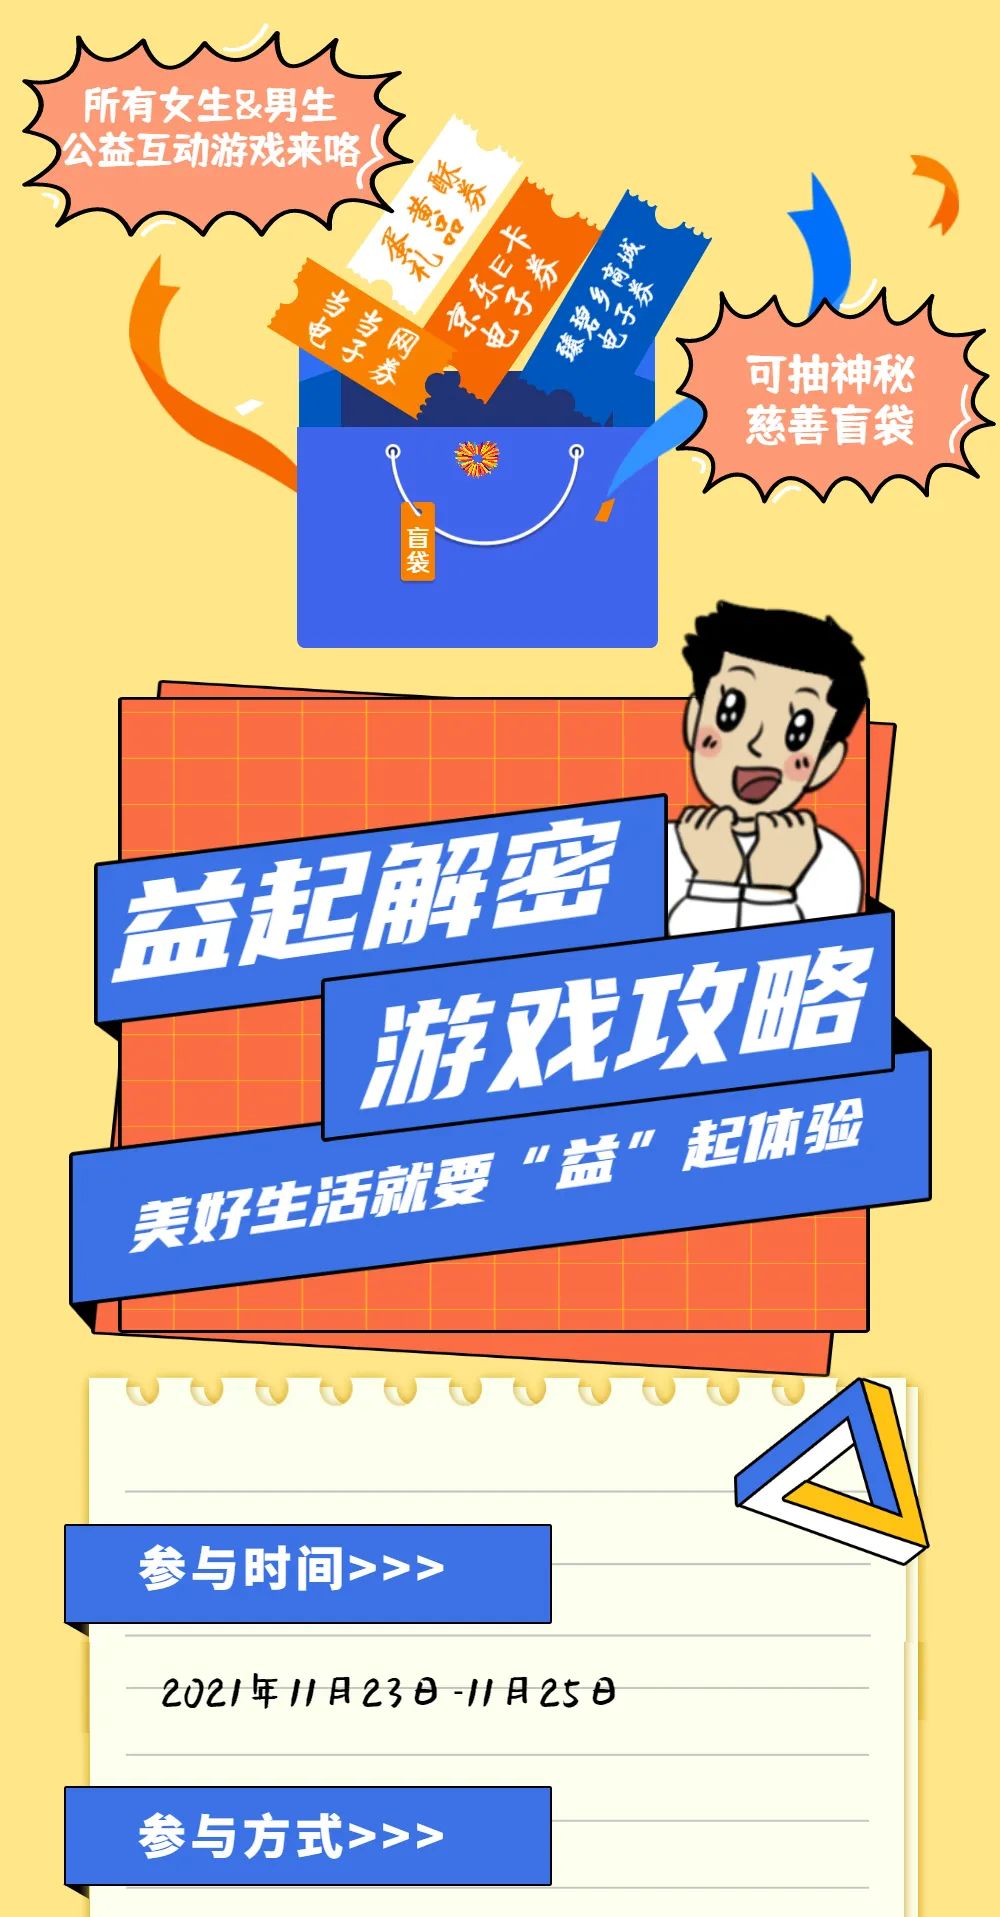 中国慈展会|为慈善助力 抽慈善盲袋 一起来玩“益起解密”小游戏！